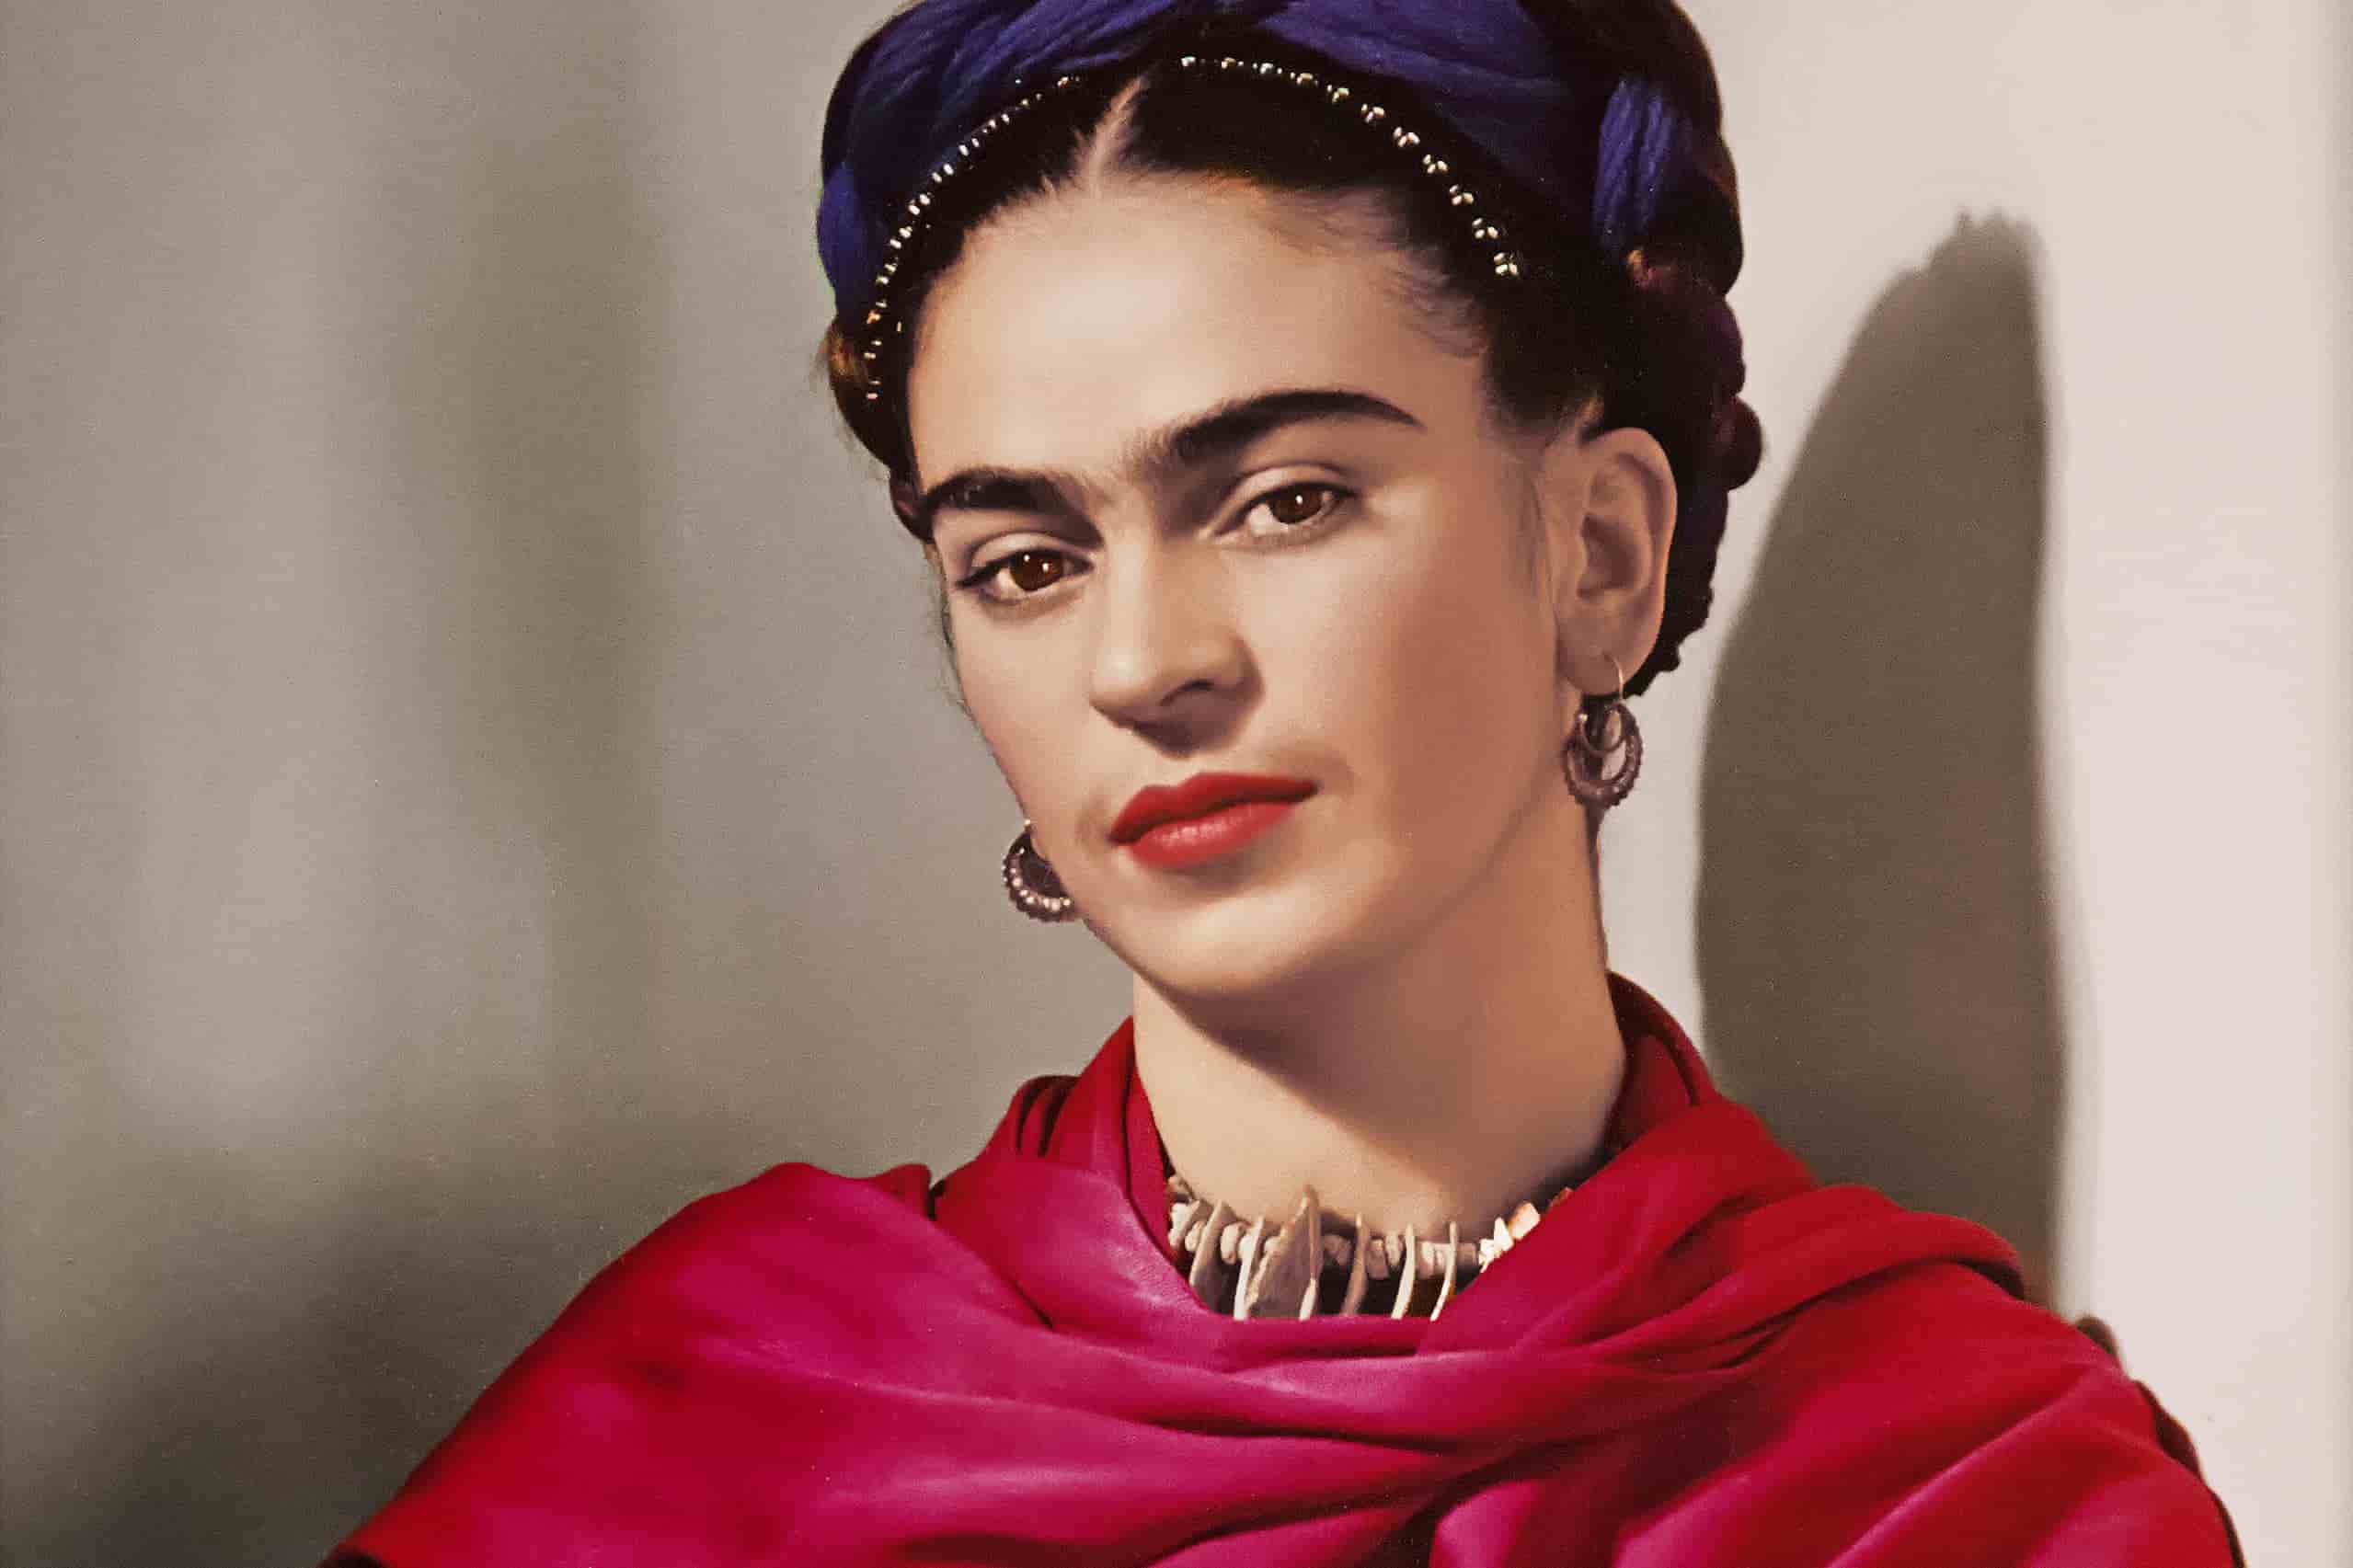 Image of Frida Khalo